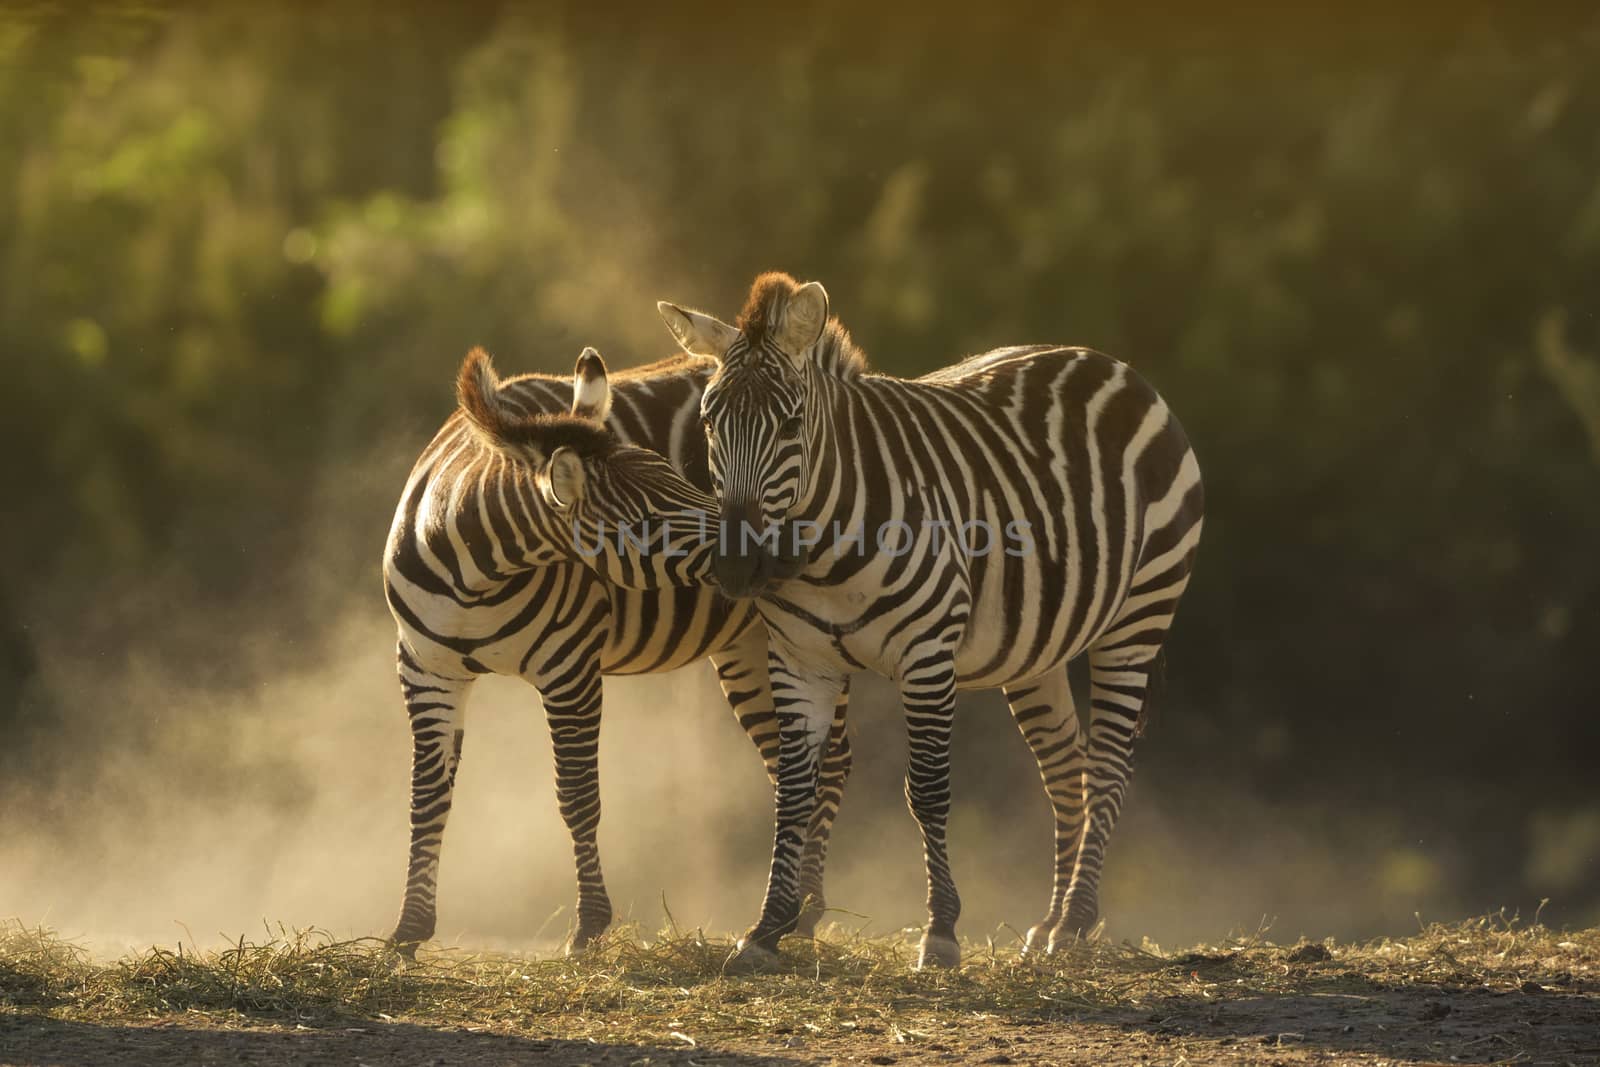 Two zebras interacting by ozkanzozmen